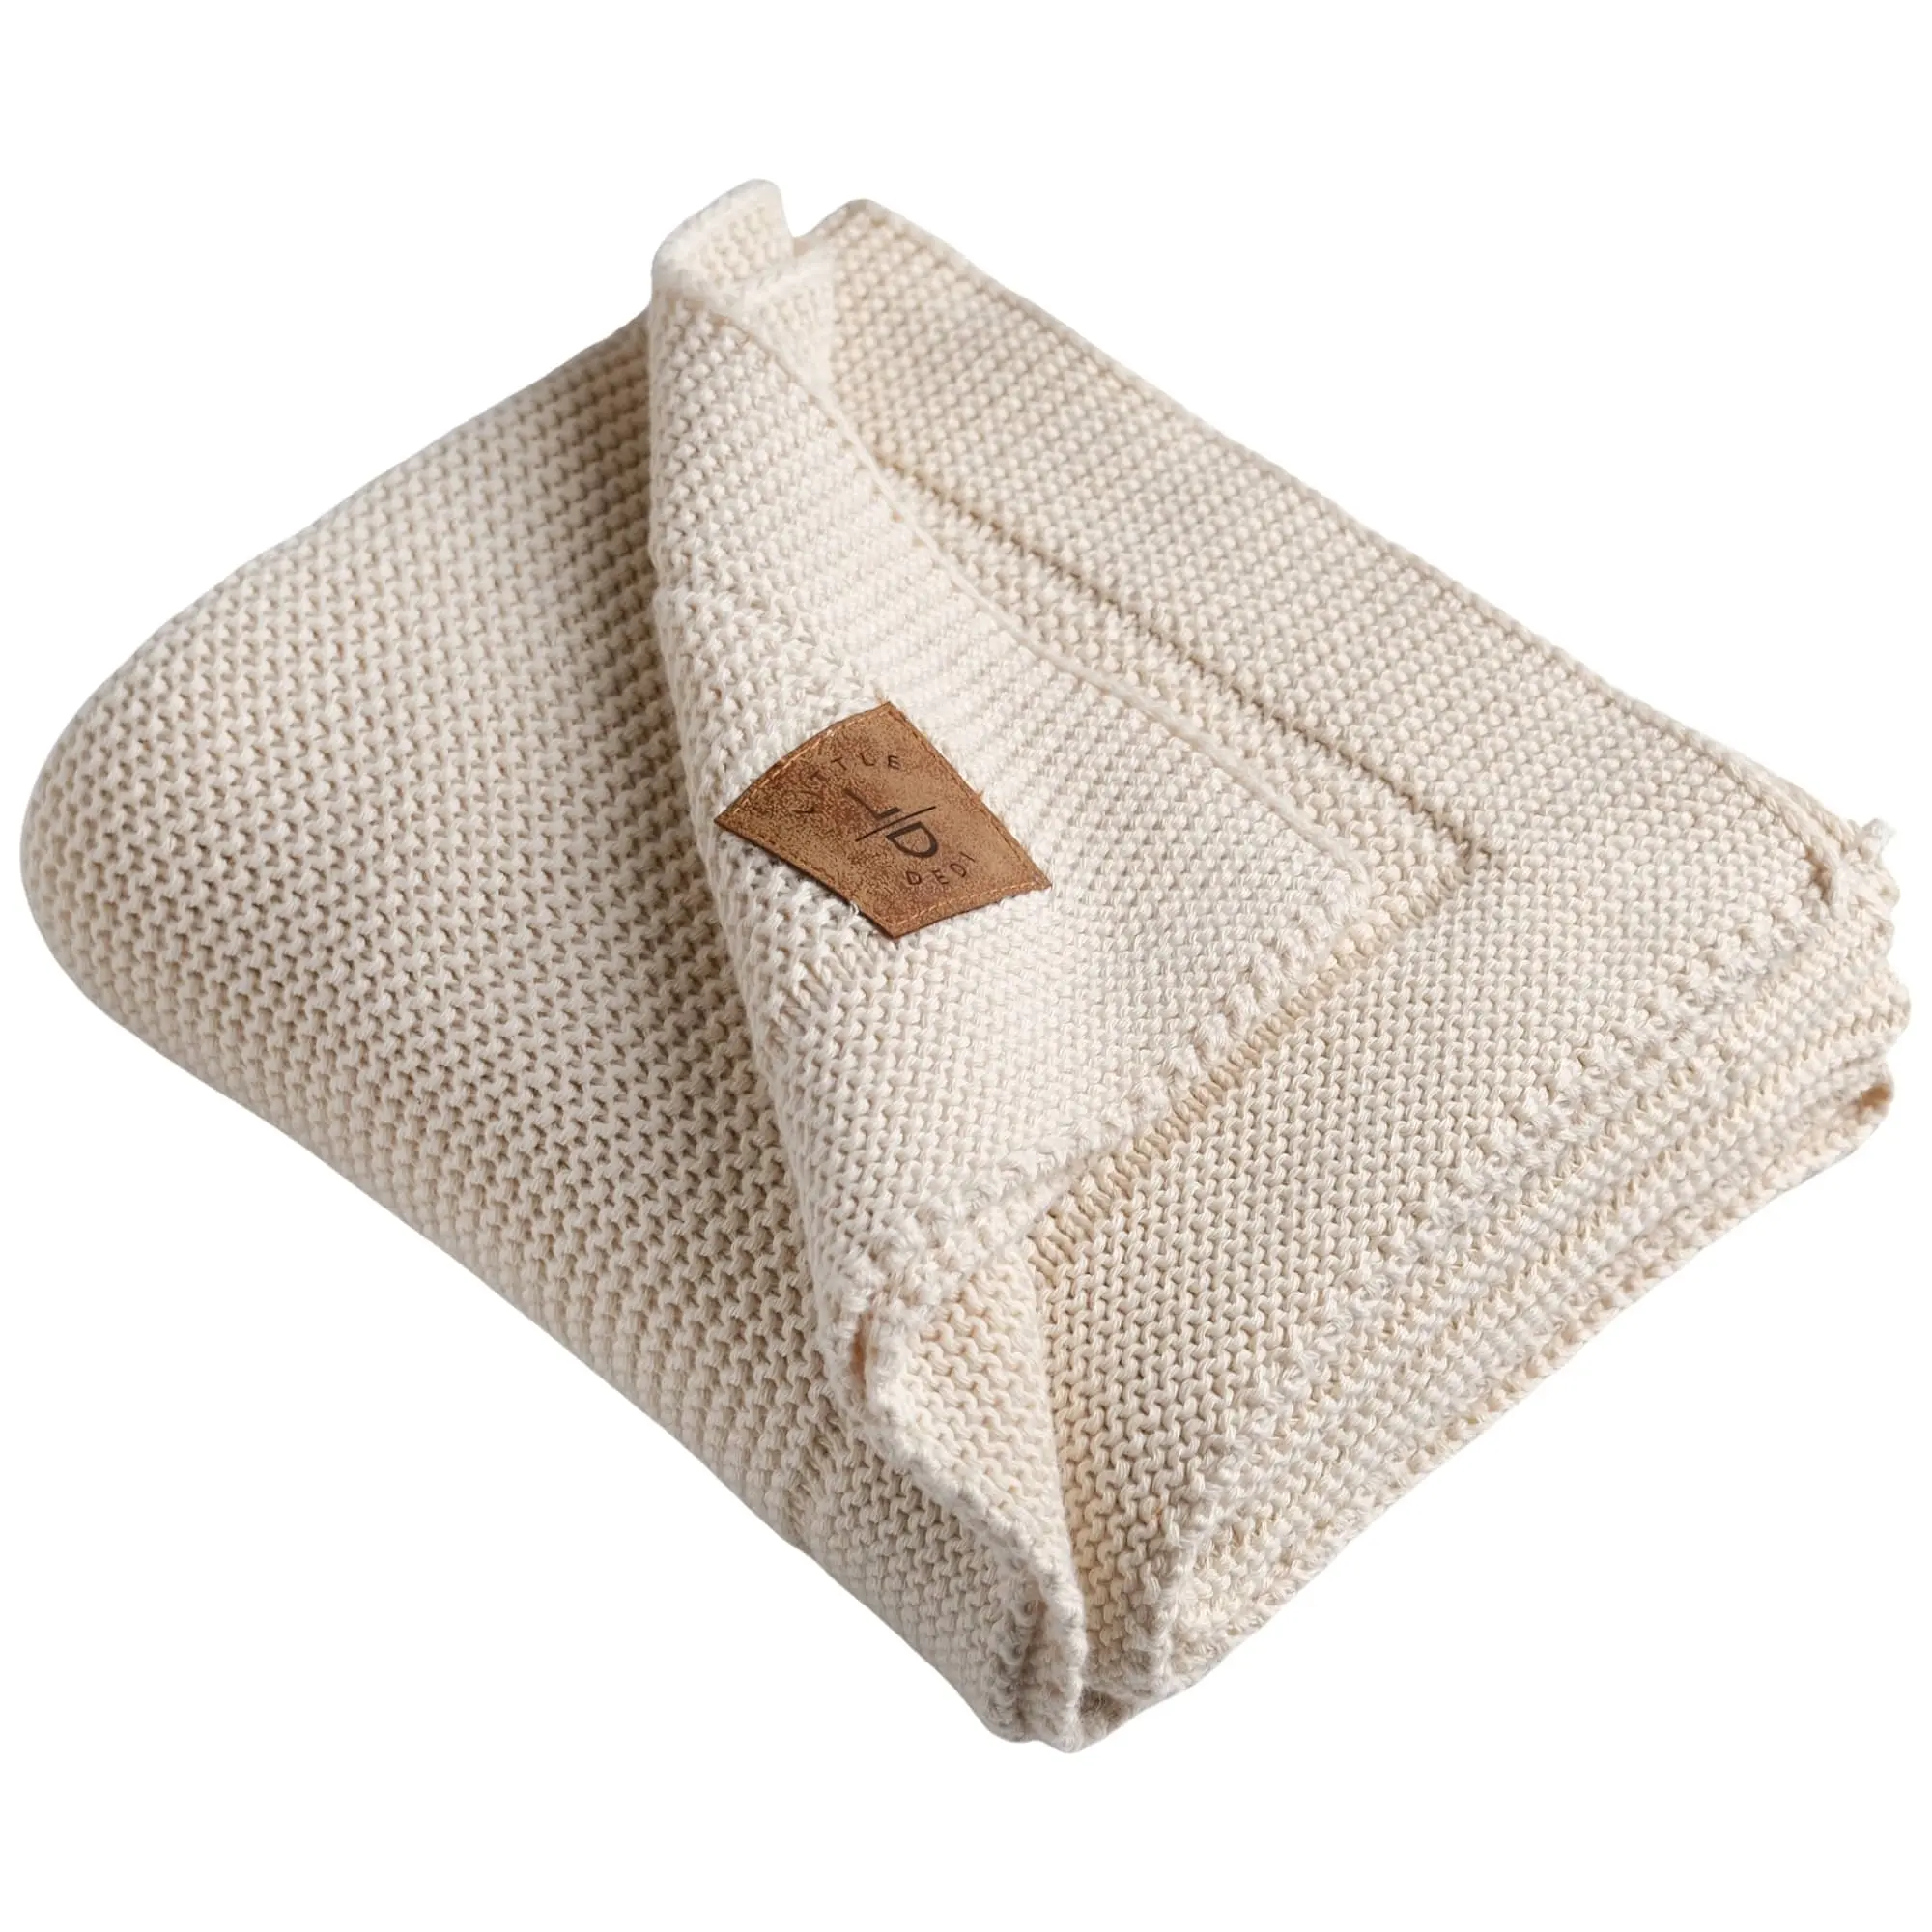 Хлопковое одеяло 130*150 см, бежевое вязаное одеяло, Лучшая цена, специальная трикотажная кровать ALINA высокого качества, домашний текстиль